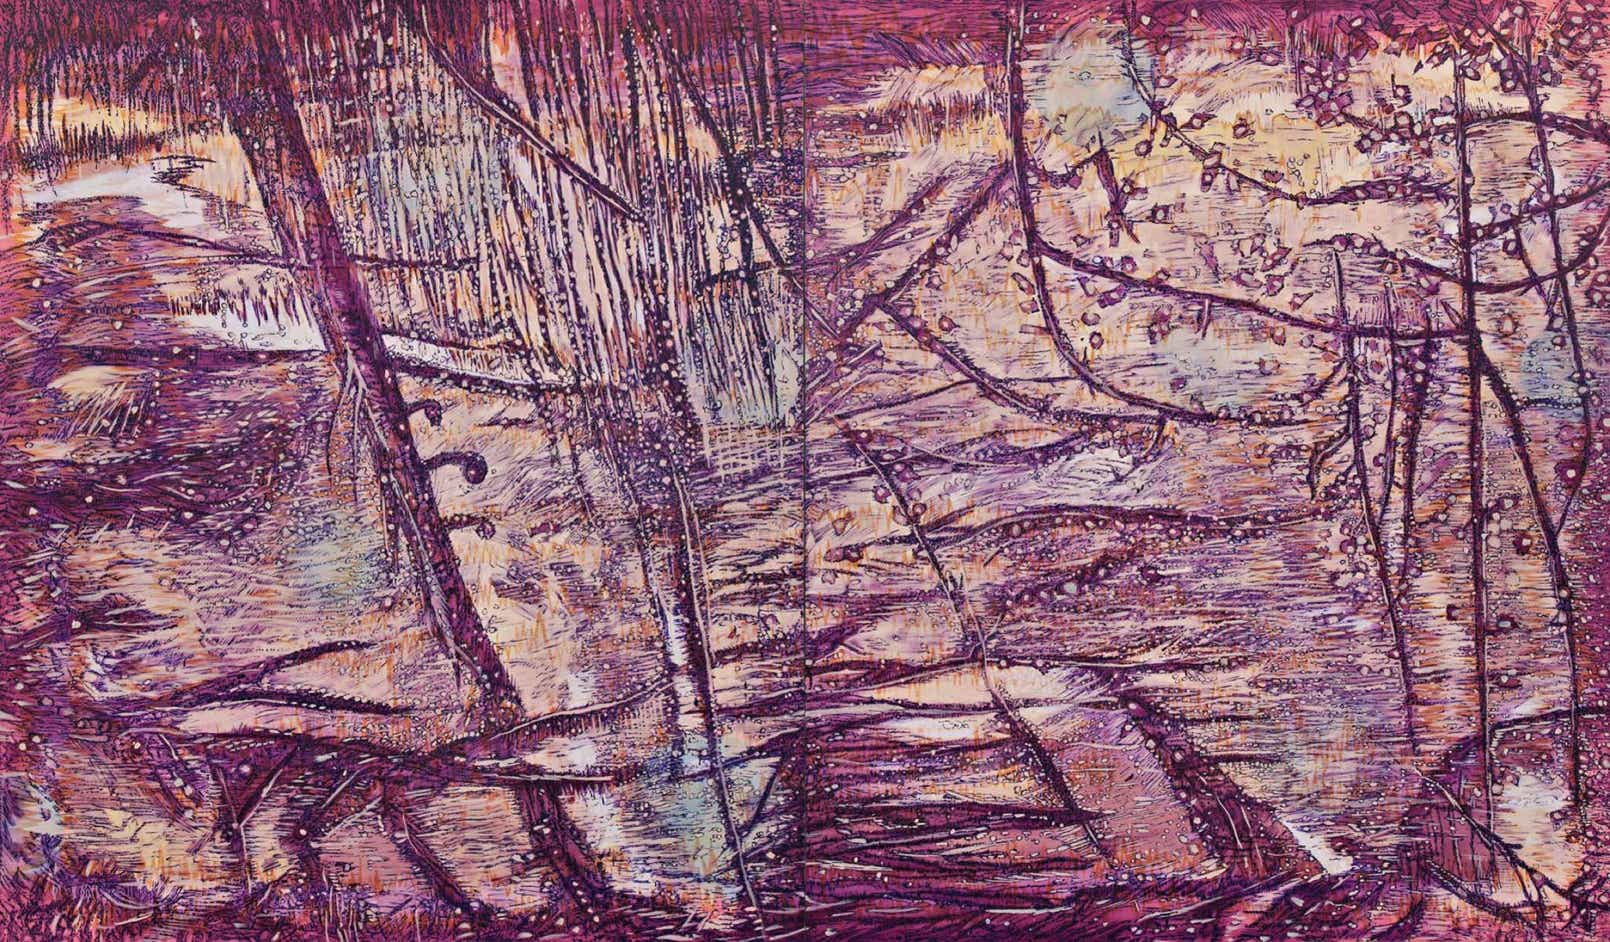 Serpentine, Oil on canvas, 190 x 320 cm, 2013, Ute Fründt, Ute Fruendt